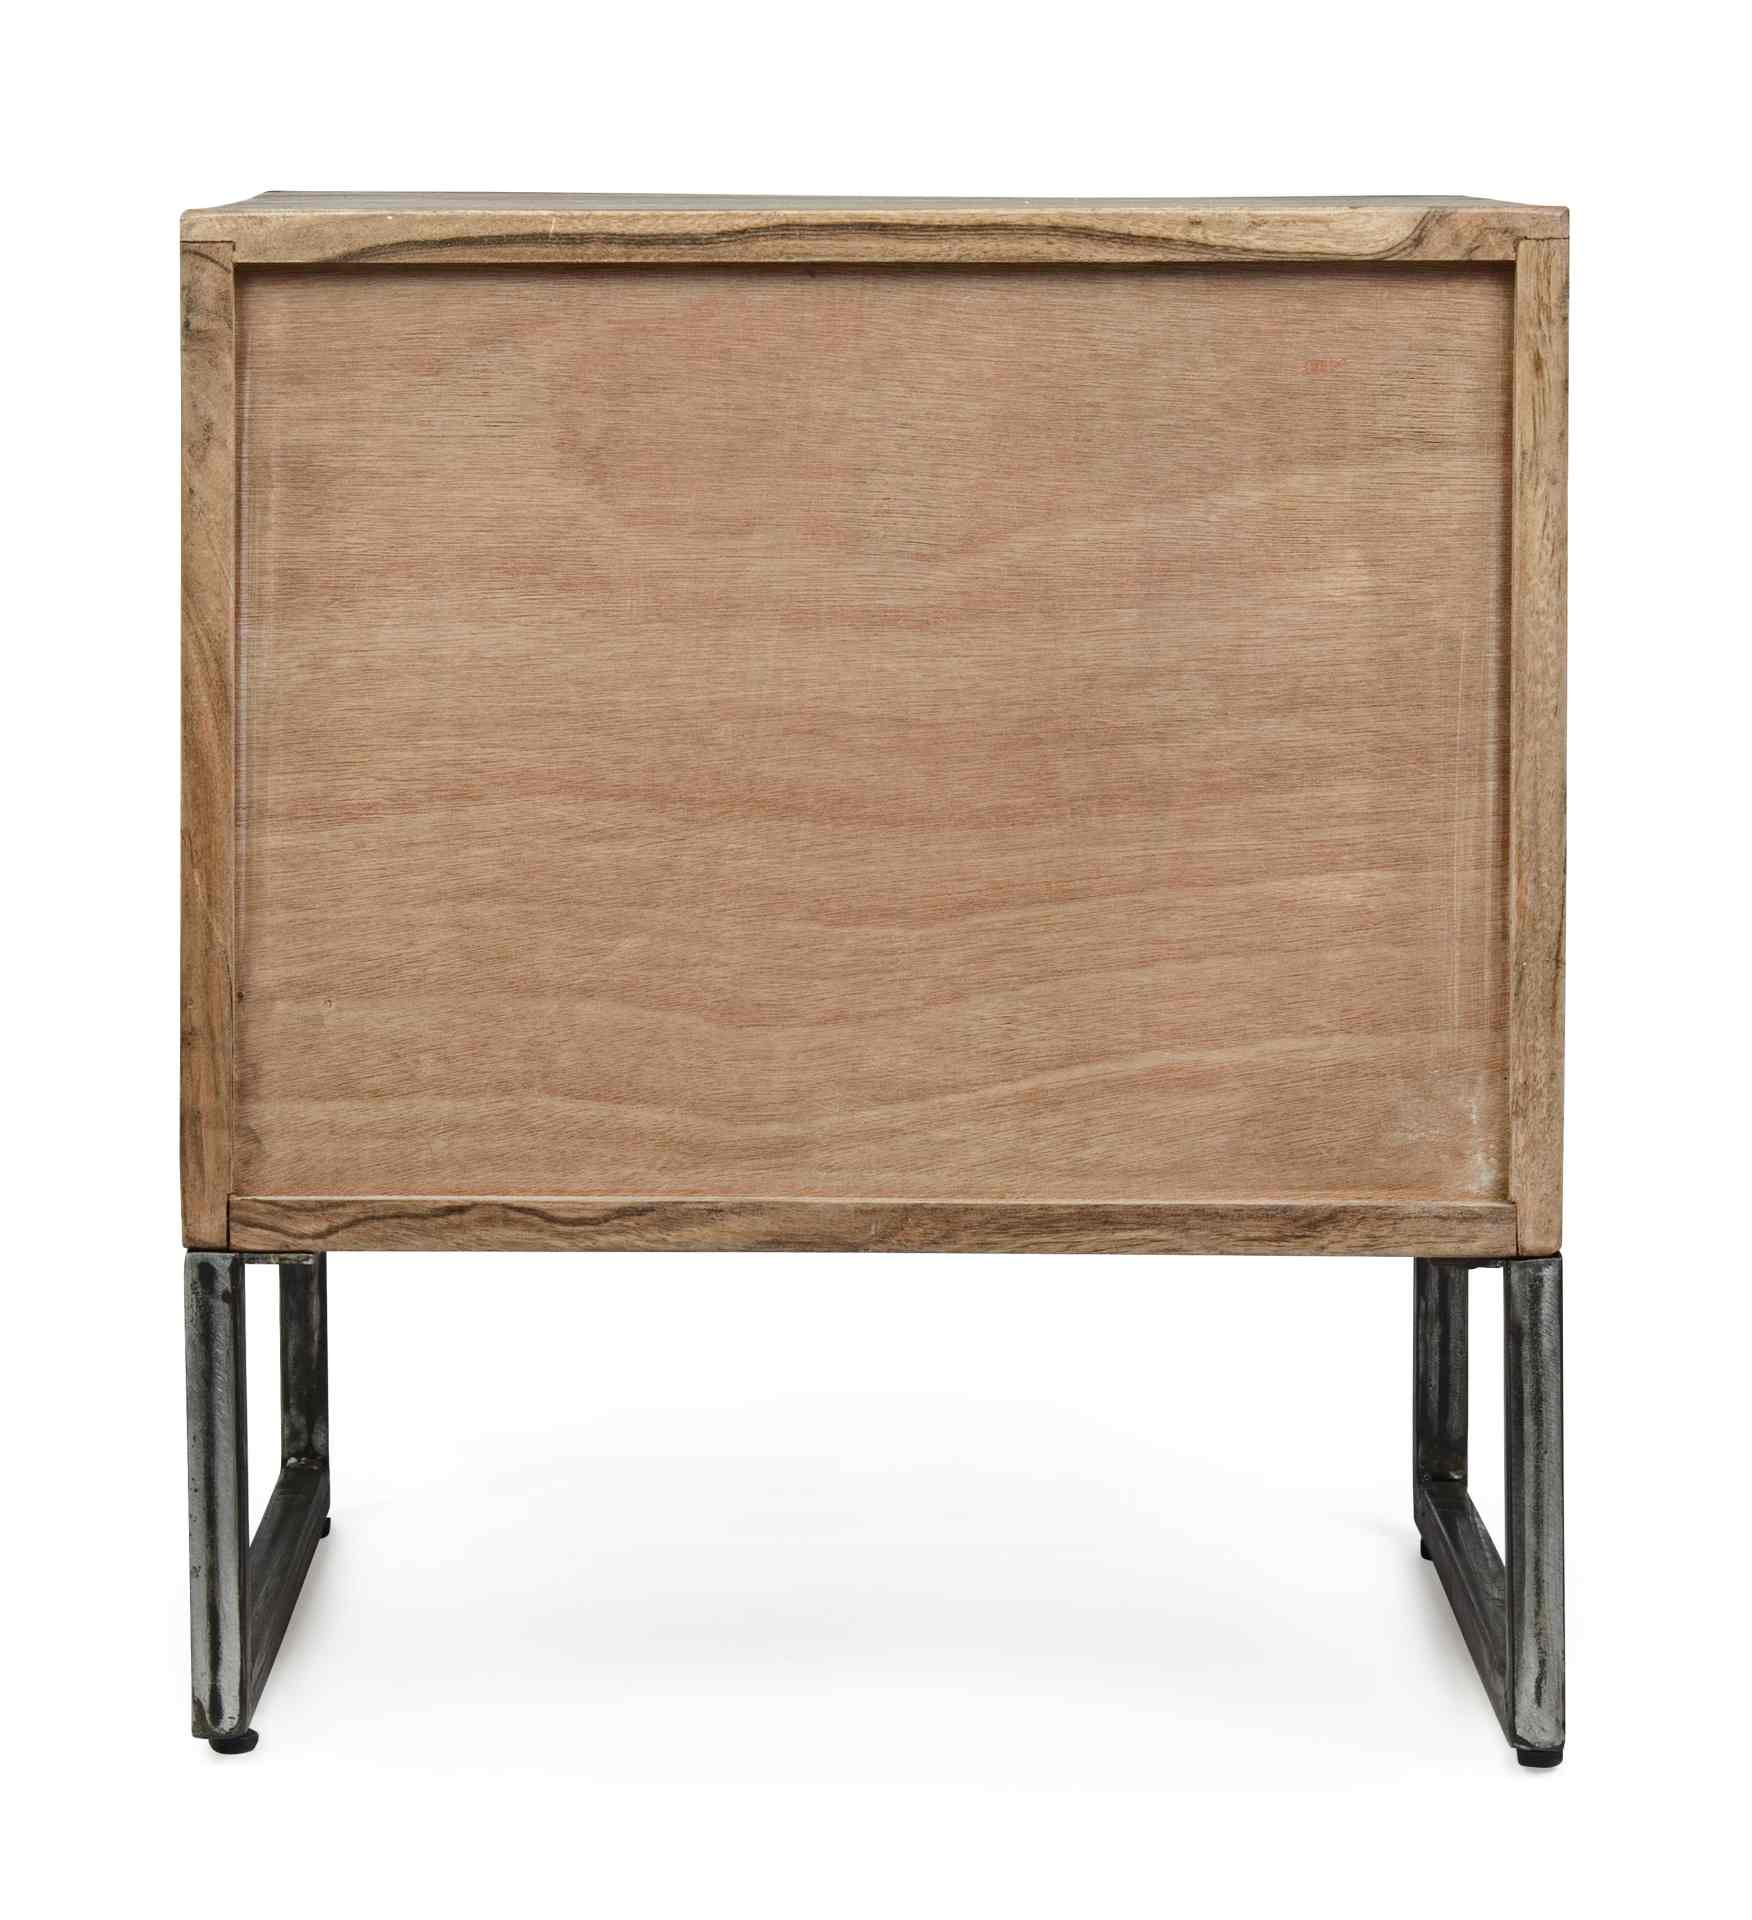 Der Nachttisch Egon überzeugt mit seinem modernen Design. Gefertigt wurde er aus Akazienholz, welches einen natürlichen Farbton besitzt. Das Gestell ist aus Metall und hat eine schwarze Farbe. Der Nachttisch verfügt über eine Tür. Die Breite beträgt 45 cm